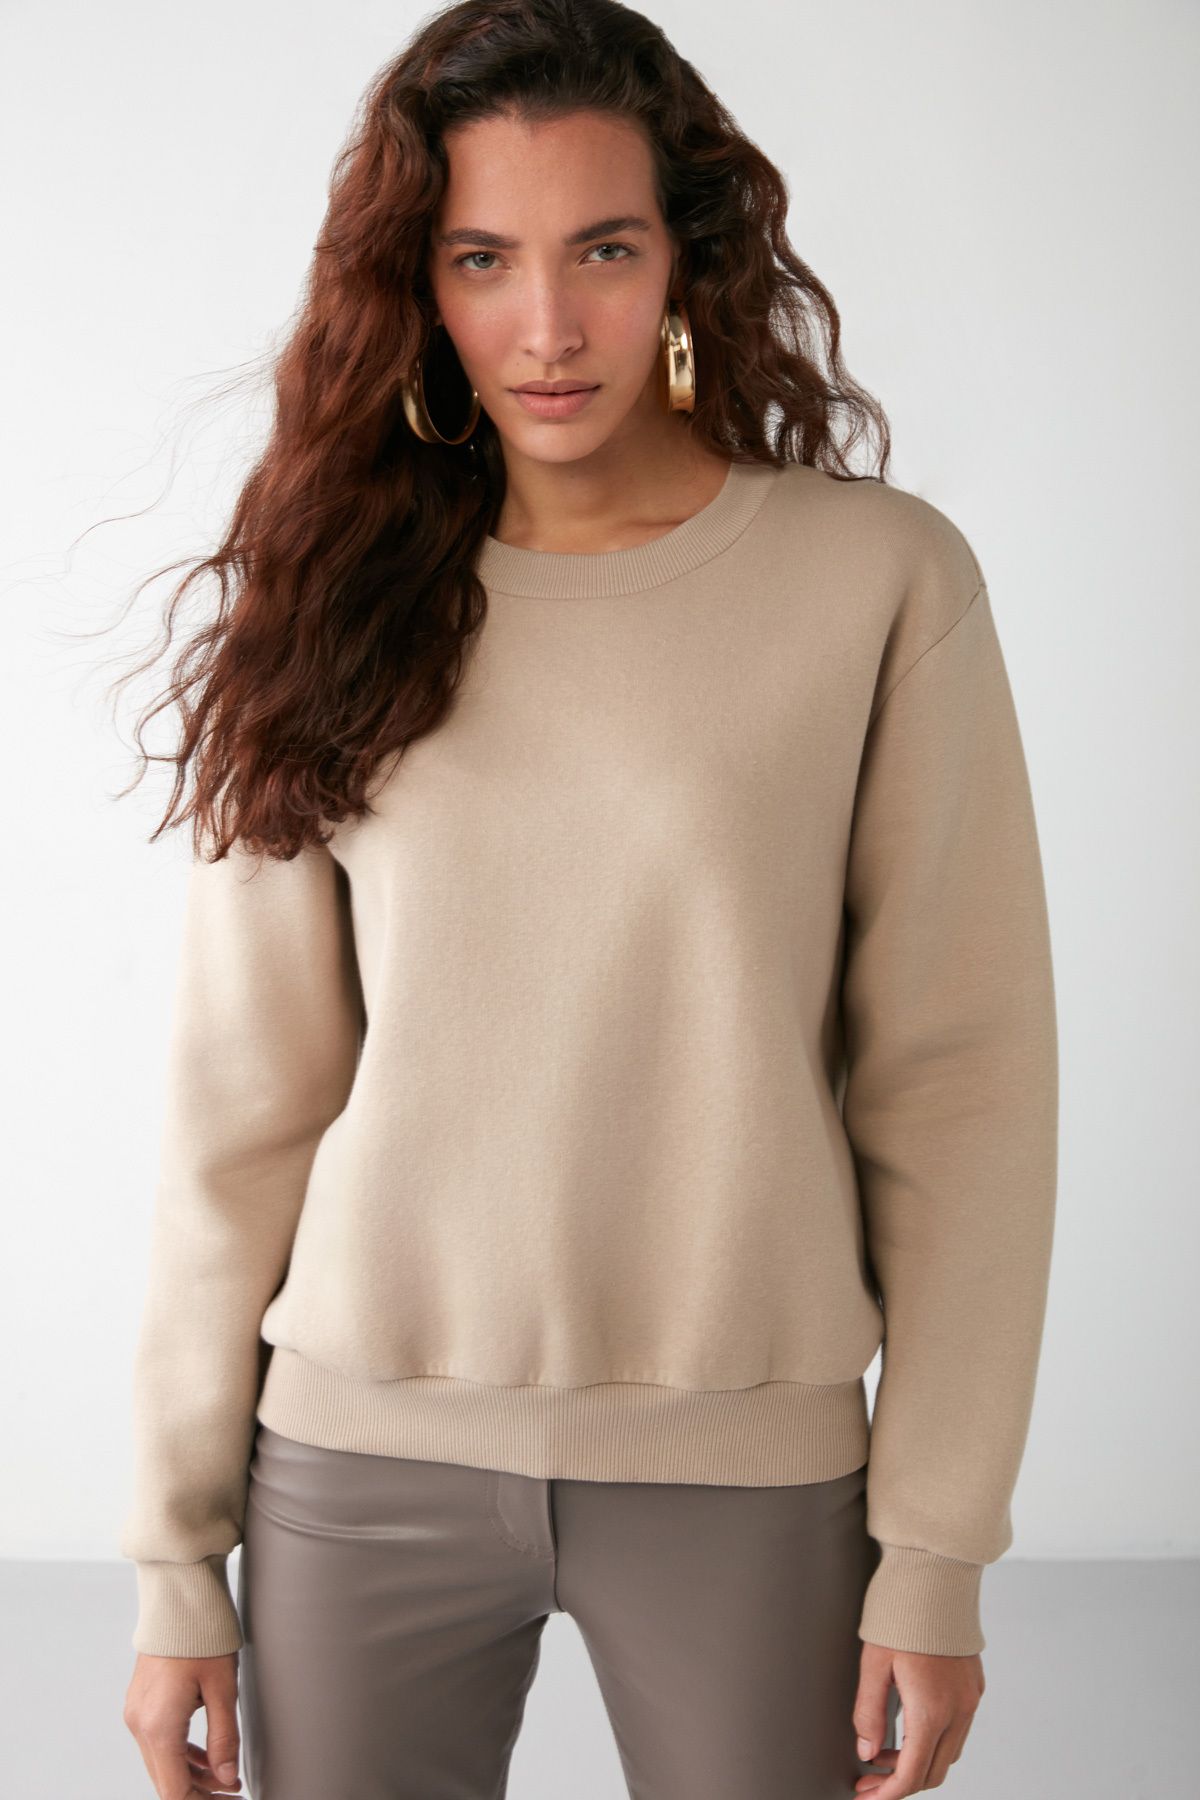 Louis Vuitton Sweatshirt Modelleri, Fiyatları - Trendyol - Sayfa 2